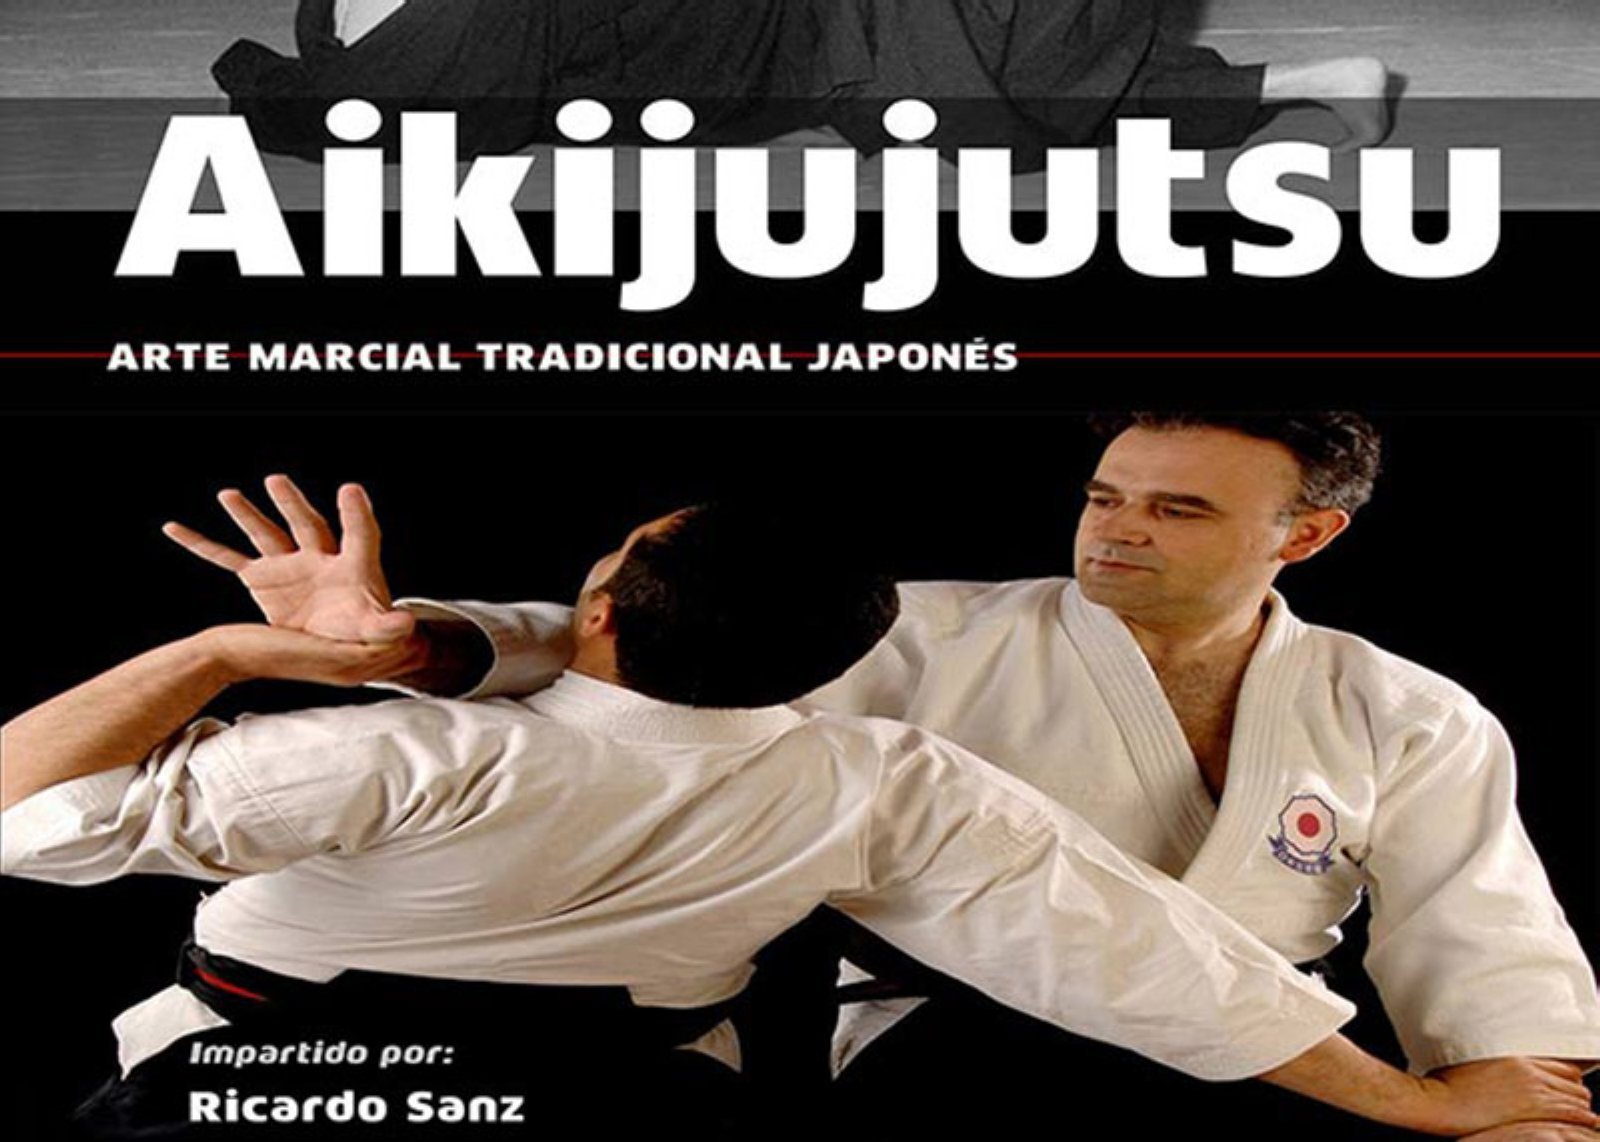 Curso de Aikijujutsu- Arte Marcial Tradicional Japones